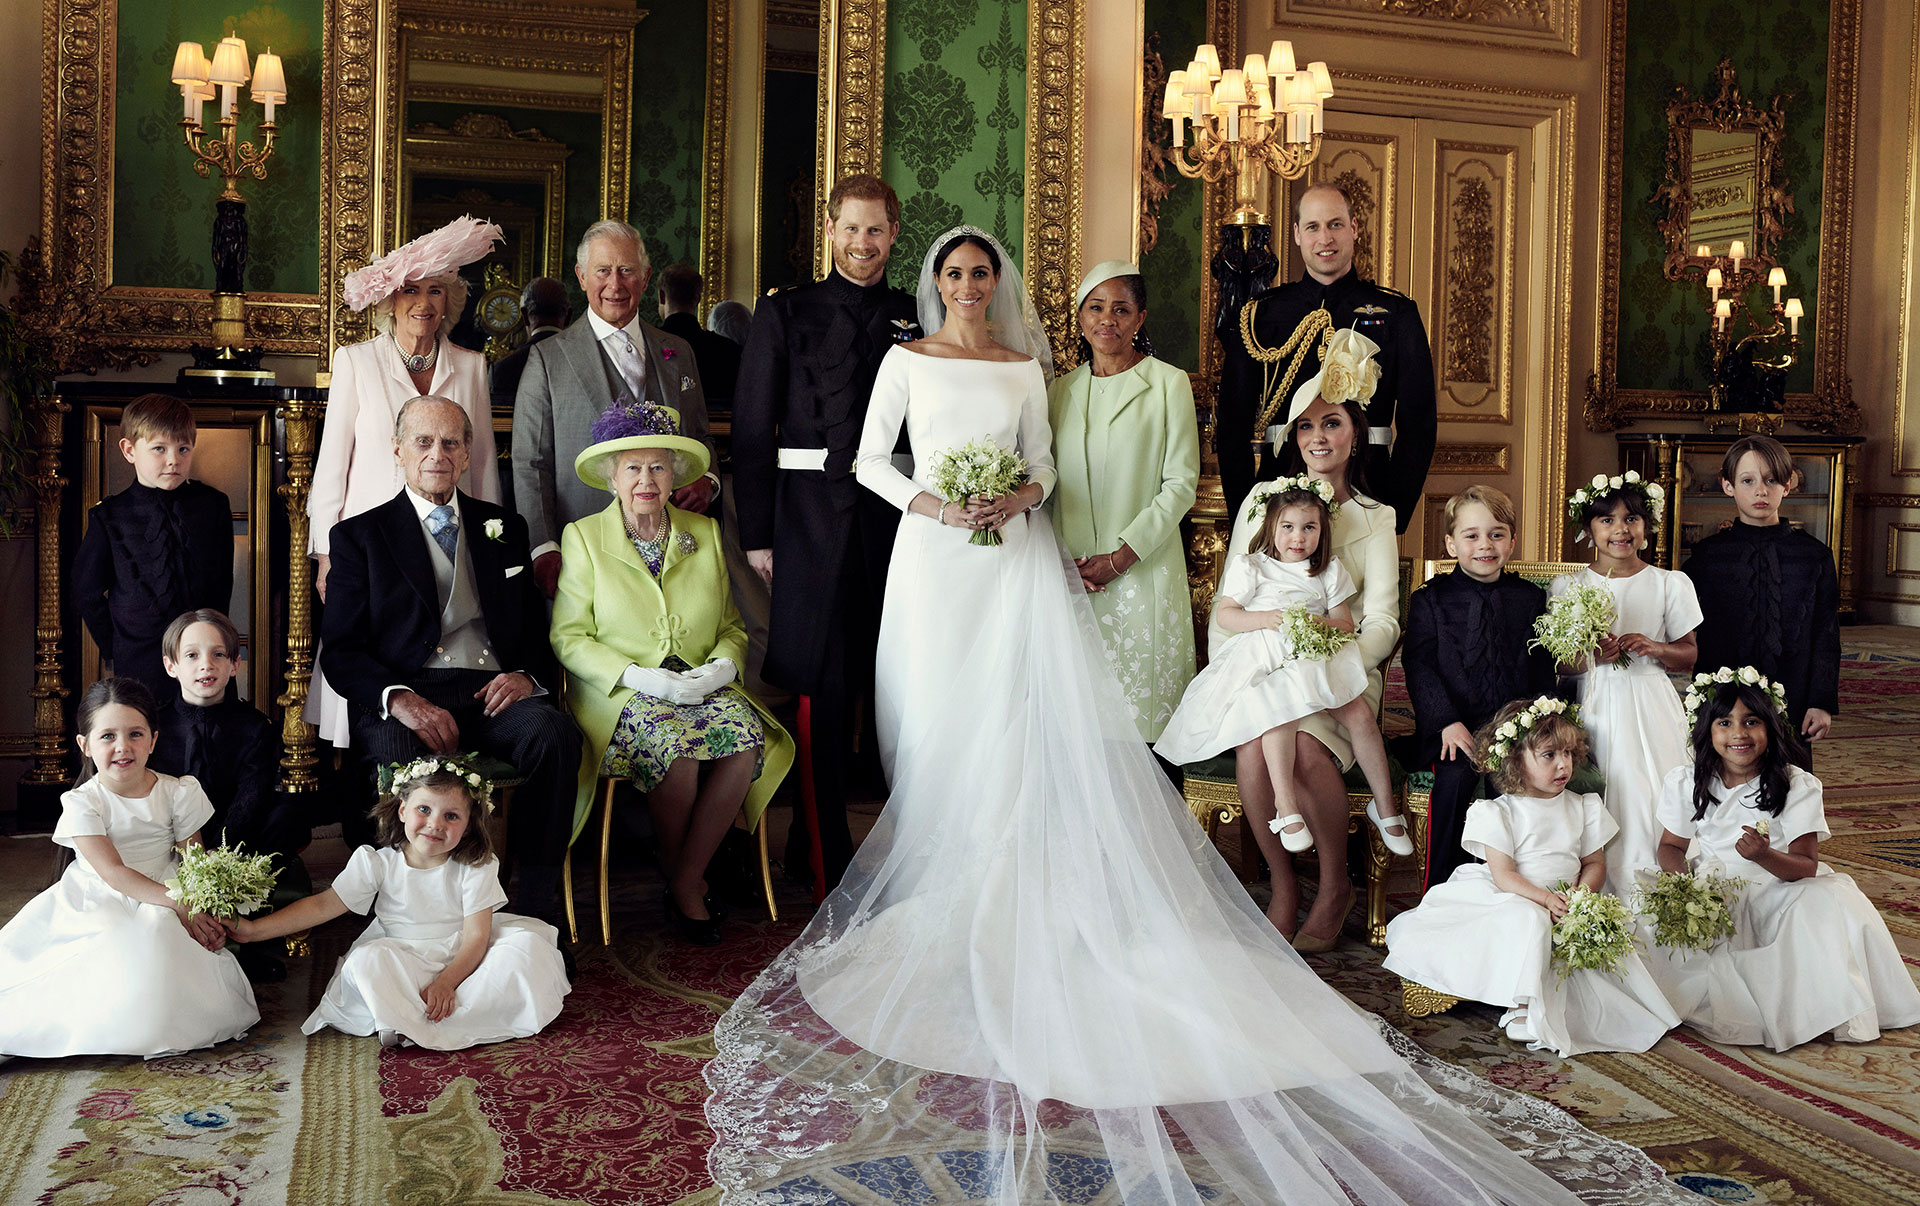 Esta fotografía oficial de la boda publicada por el Duque y la Duquesa de Sussex muestra al Duque y a la Duquesa en el Salón Verde del Castillo de Windsor, con (de izquierda a derecha): Fila de atrás: Maestro Jasper Dyer, la Duquesa de Cornualles, el Príncipe de Gales, la Sra. Doria Ragland, el Duque de Cambridge; fila del medio: Maestro Brian Mulroney, el Duque de Edimburgo, la Reina Isabel II, la Duquesa de Cambridge, la Princesa Carlota, el Príncipe Jorge, la Srta. Rylan Litt, el Maestro John Mulroney; Fila delantera: La señorita Ivy Mulroney, la señorita Florence van Cutsem, la señorita Zalie Warren, la señorita Remi Litt.  Sábado 19 de mayo de 2018. (Reuters)